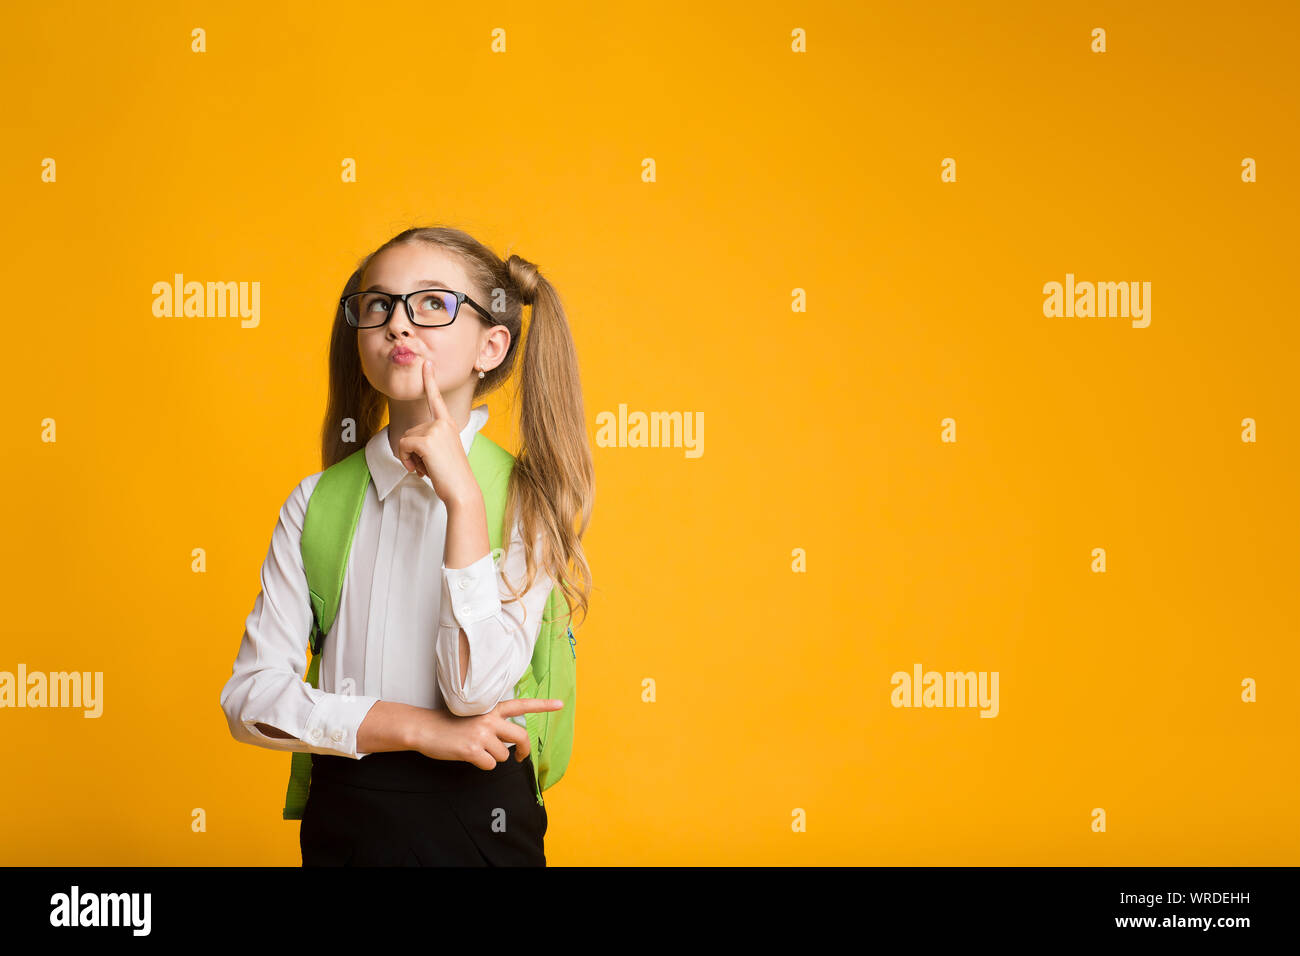 Élève d'école élémentaire Girl Thinking posant sur fond jaune. Banque D'Images